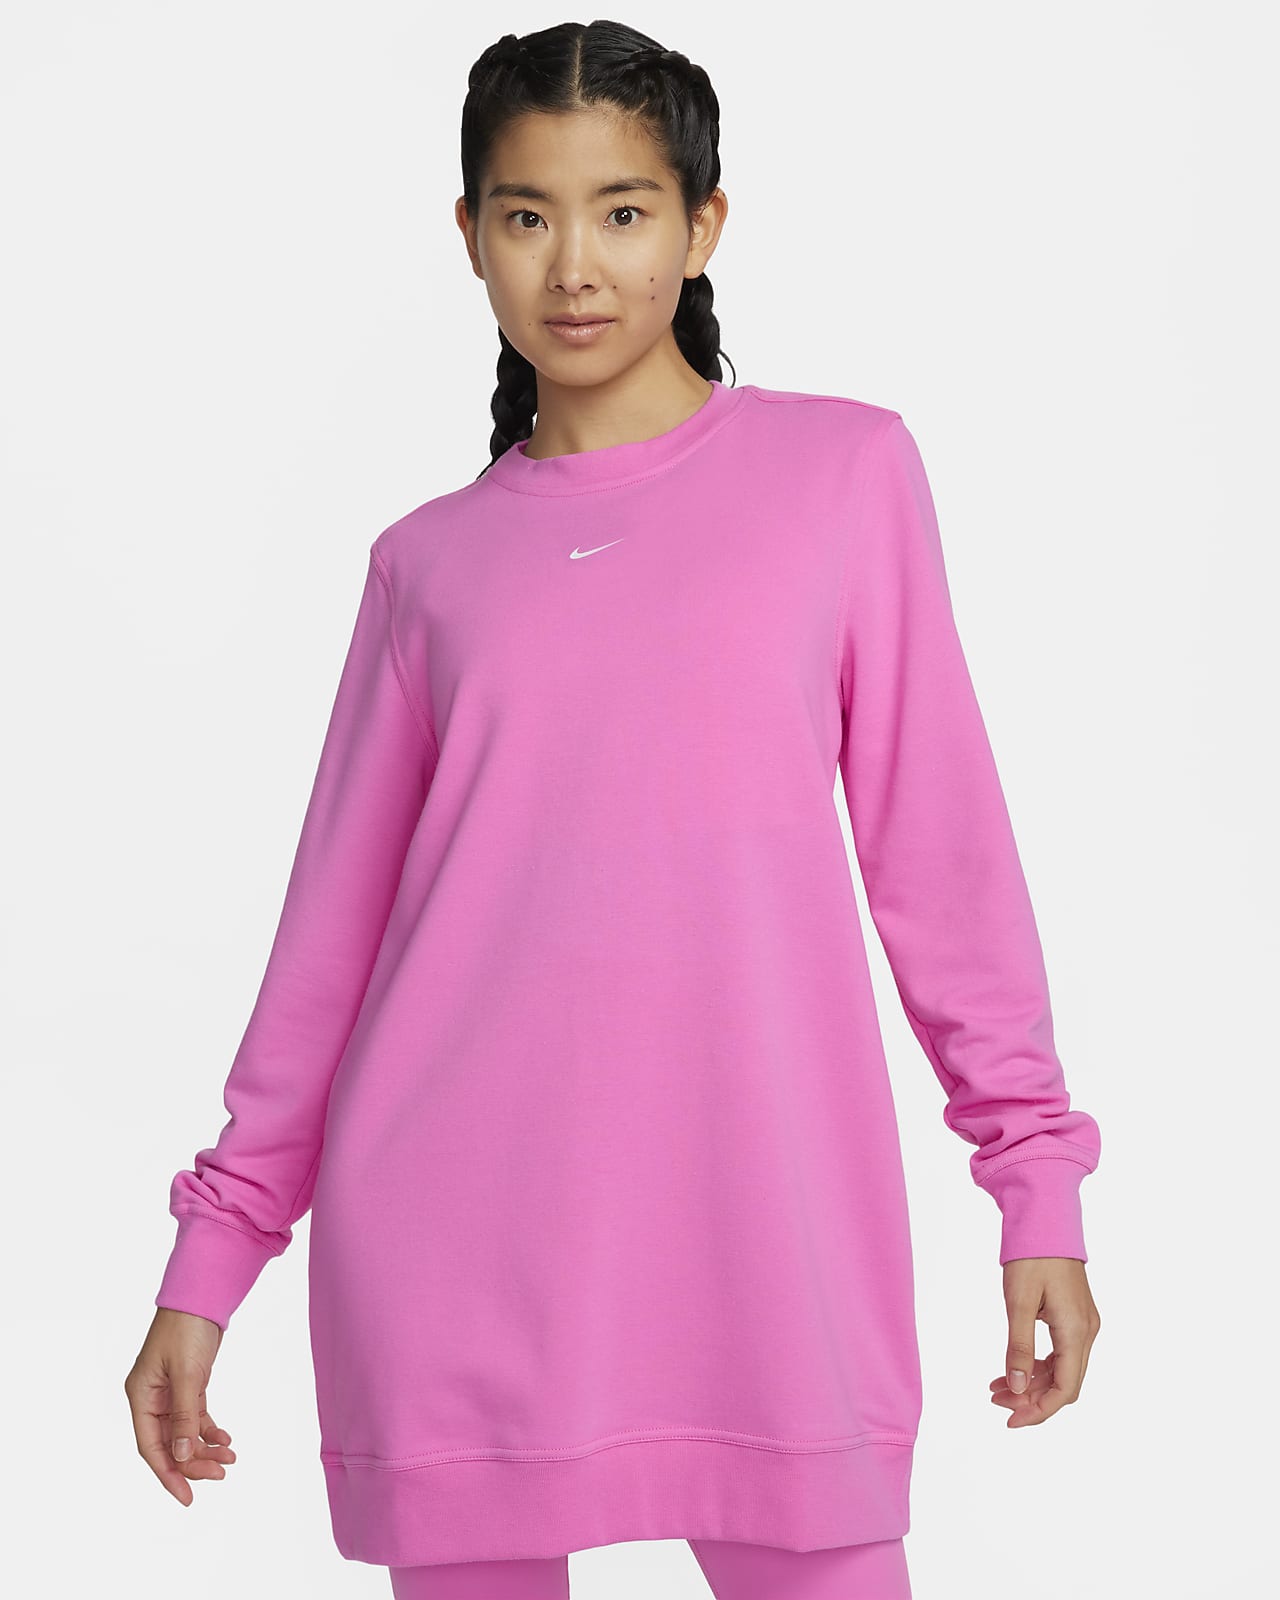 เสื้อทูนิคคอกลมเฟรนช์เทรีผู้หญิง Nike Dri-FIT One